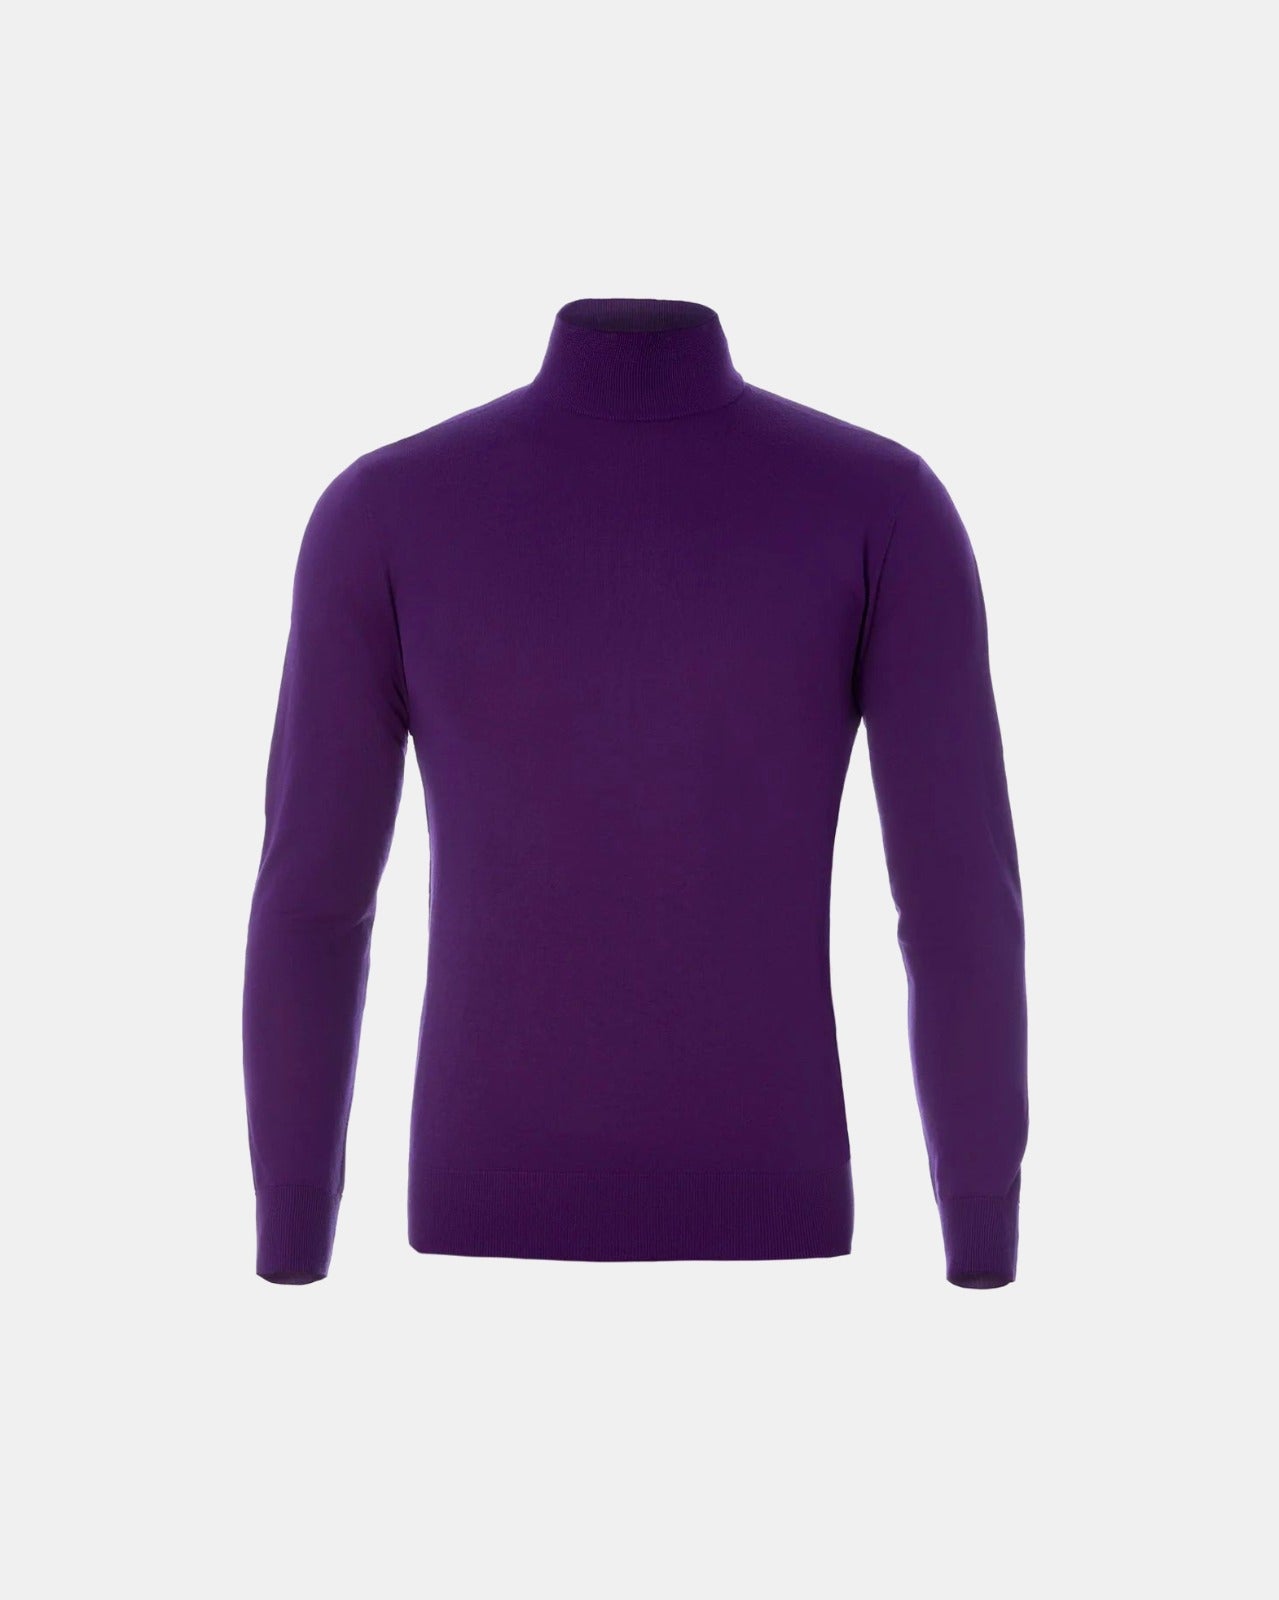 Purple 16 GG merino wool high neck sweater